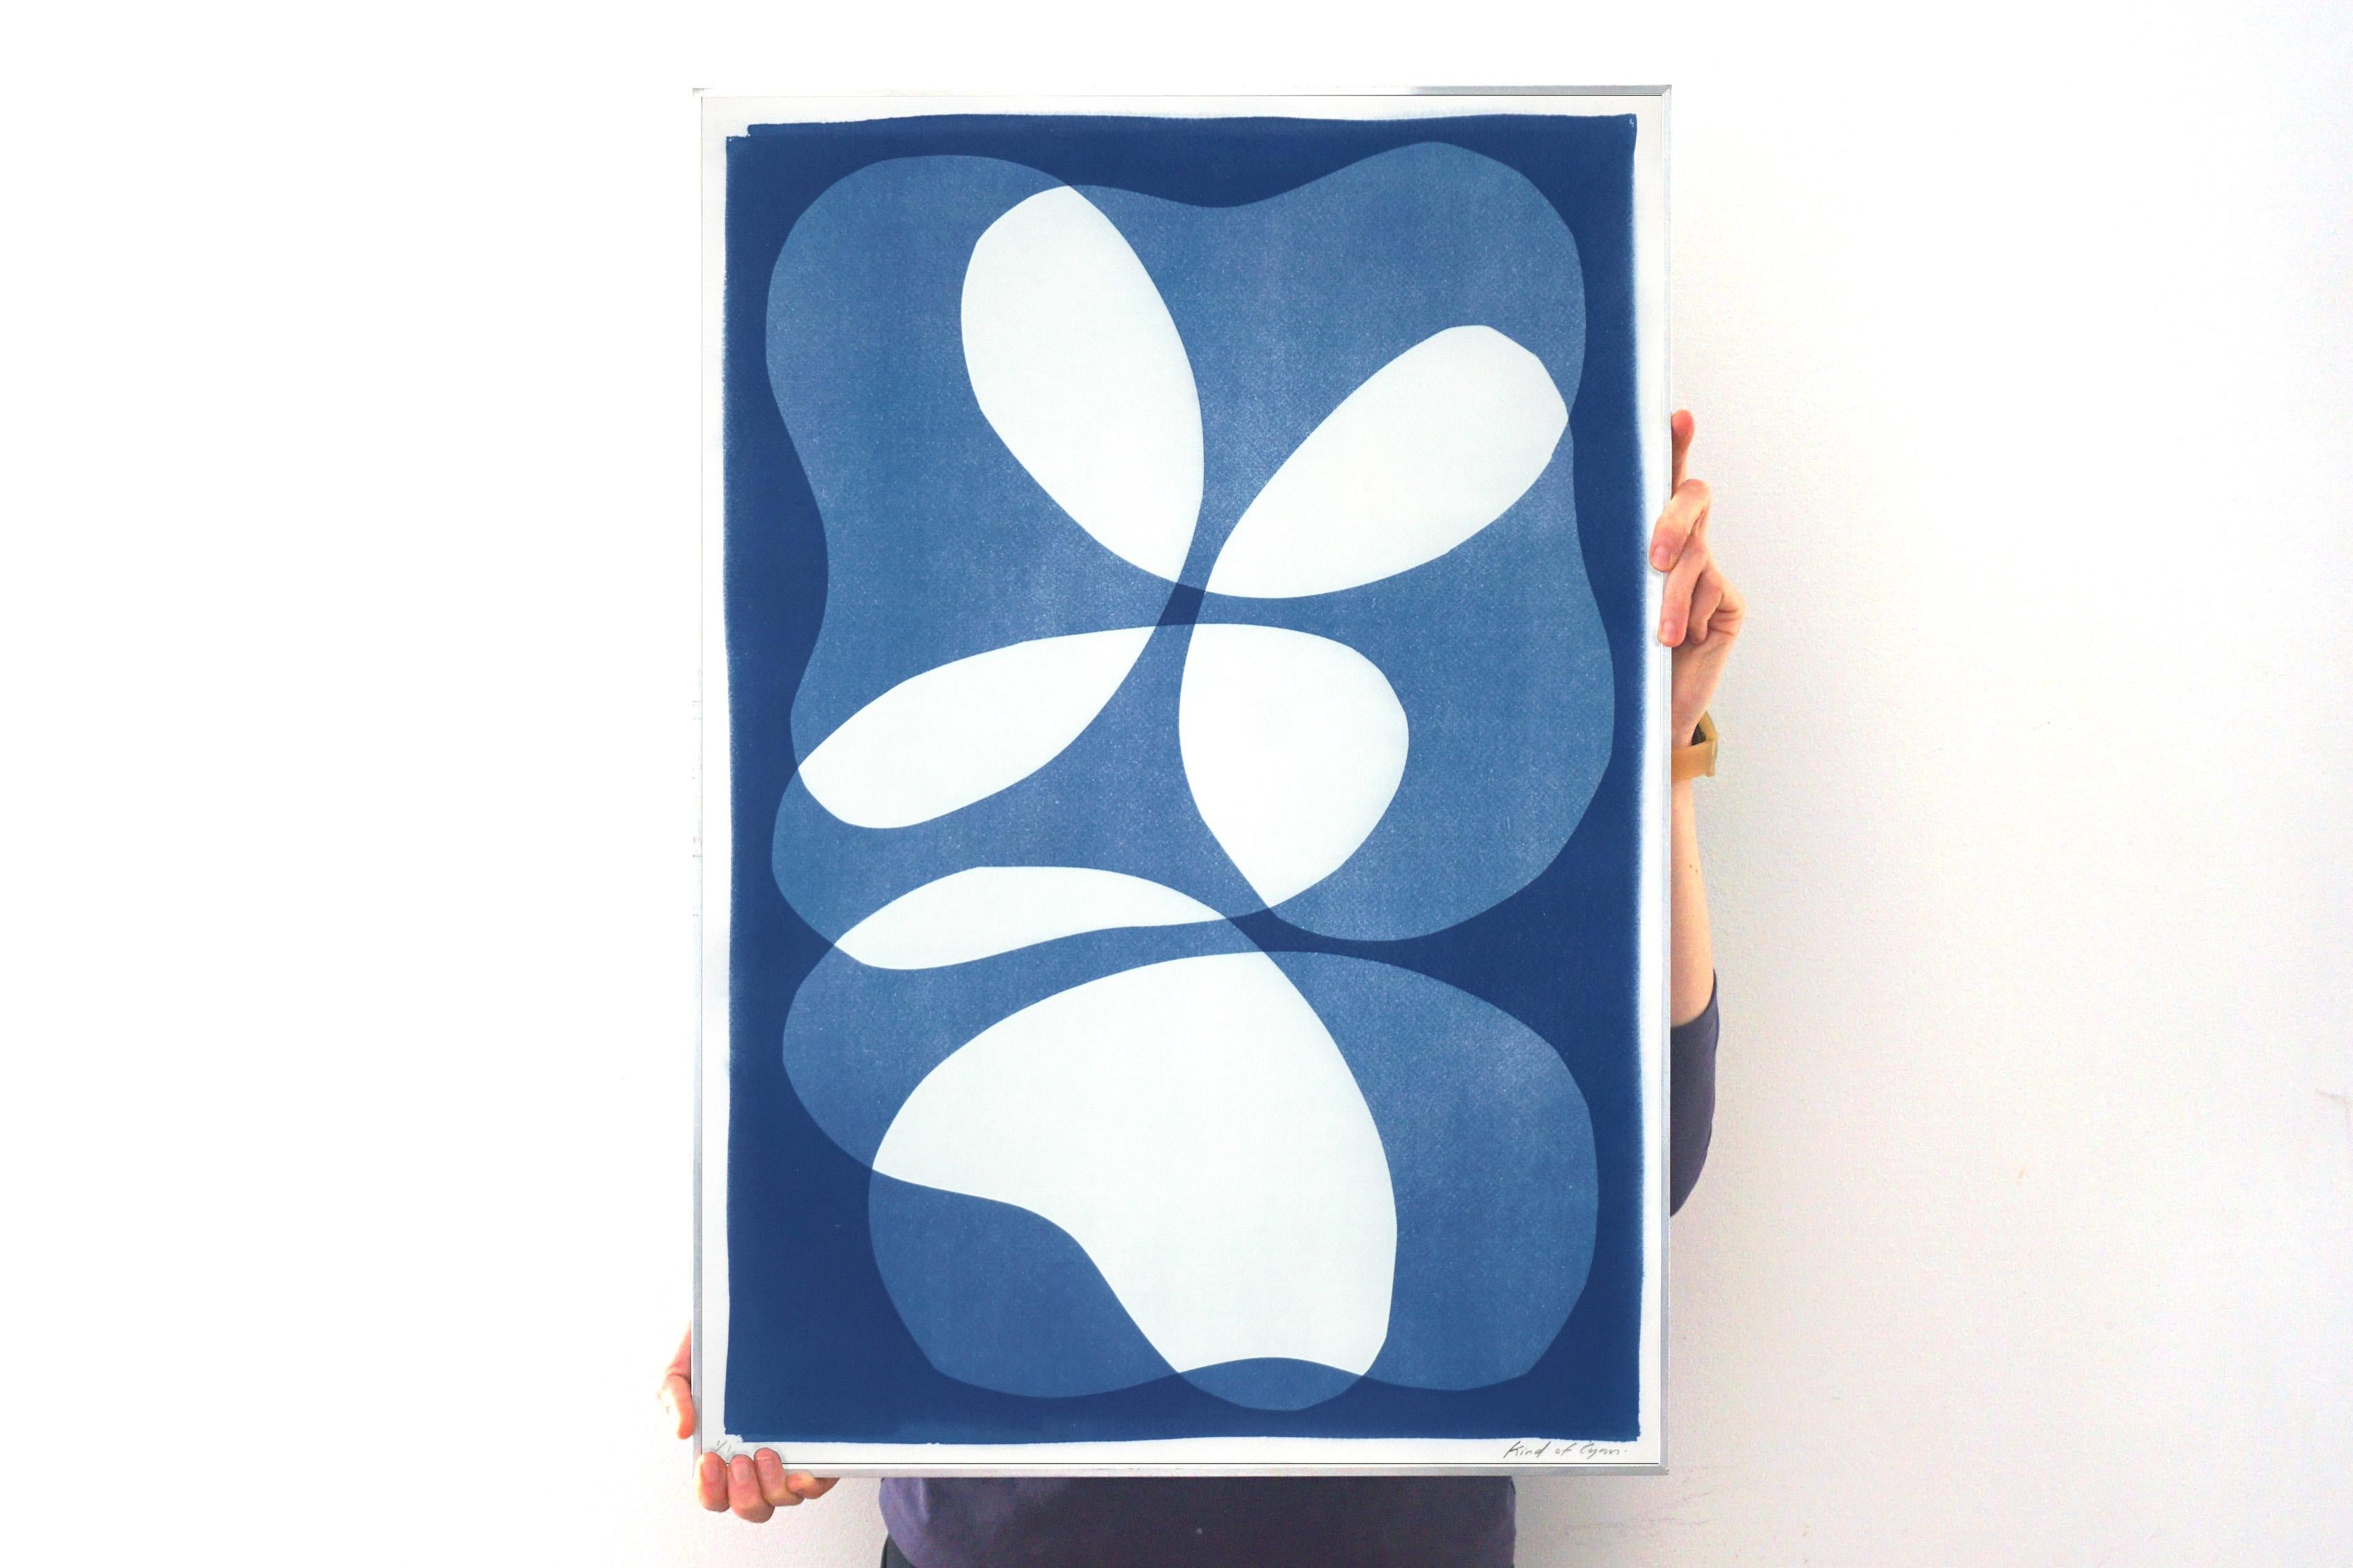 Beans en couches, blancs et bleus, formes minimalistes abstraites, 2022 - Print de Kind of Cyan